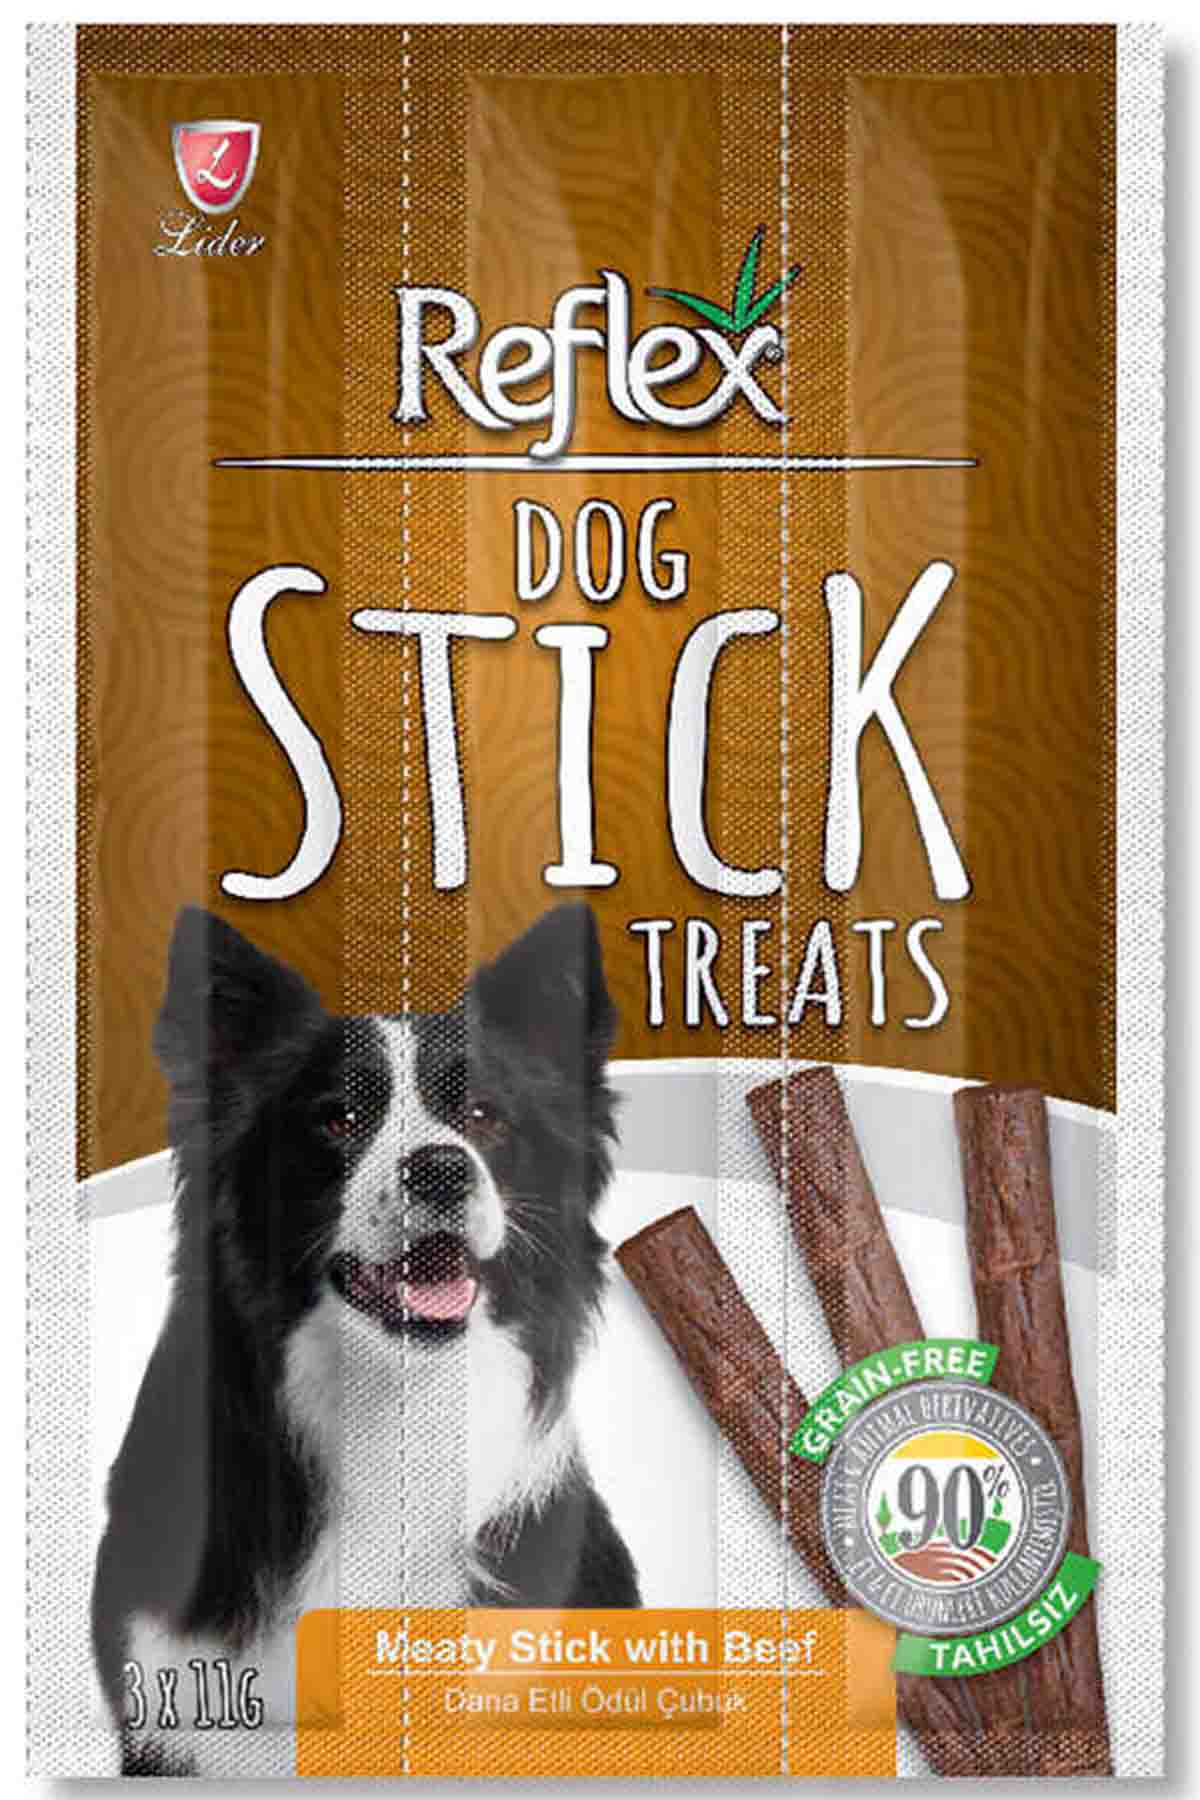 Reflex Stick Biftekli Köpek Ödül Çubuğu 3x11gr